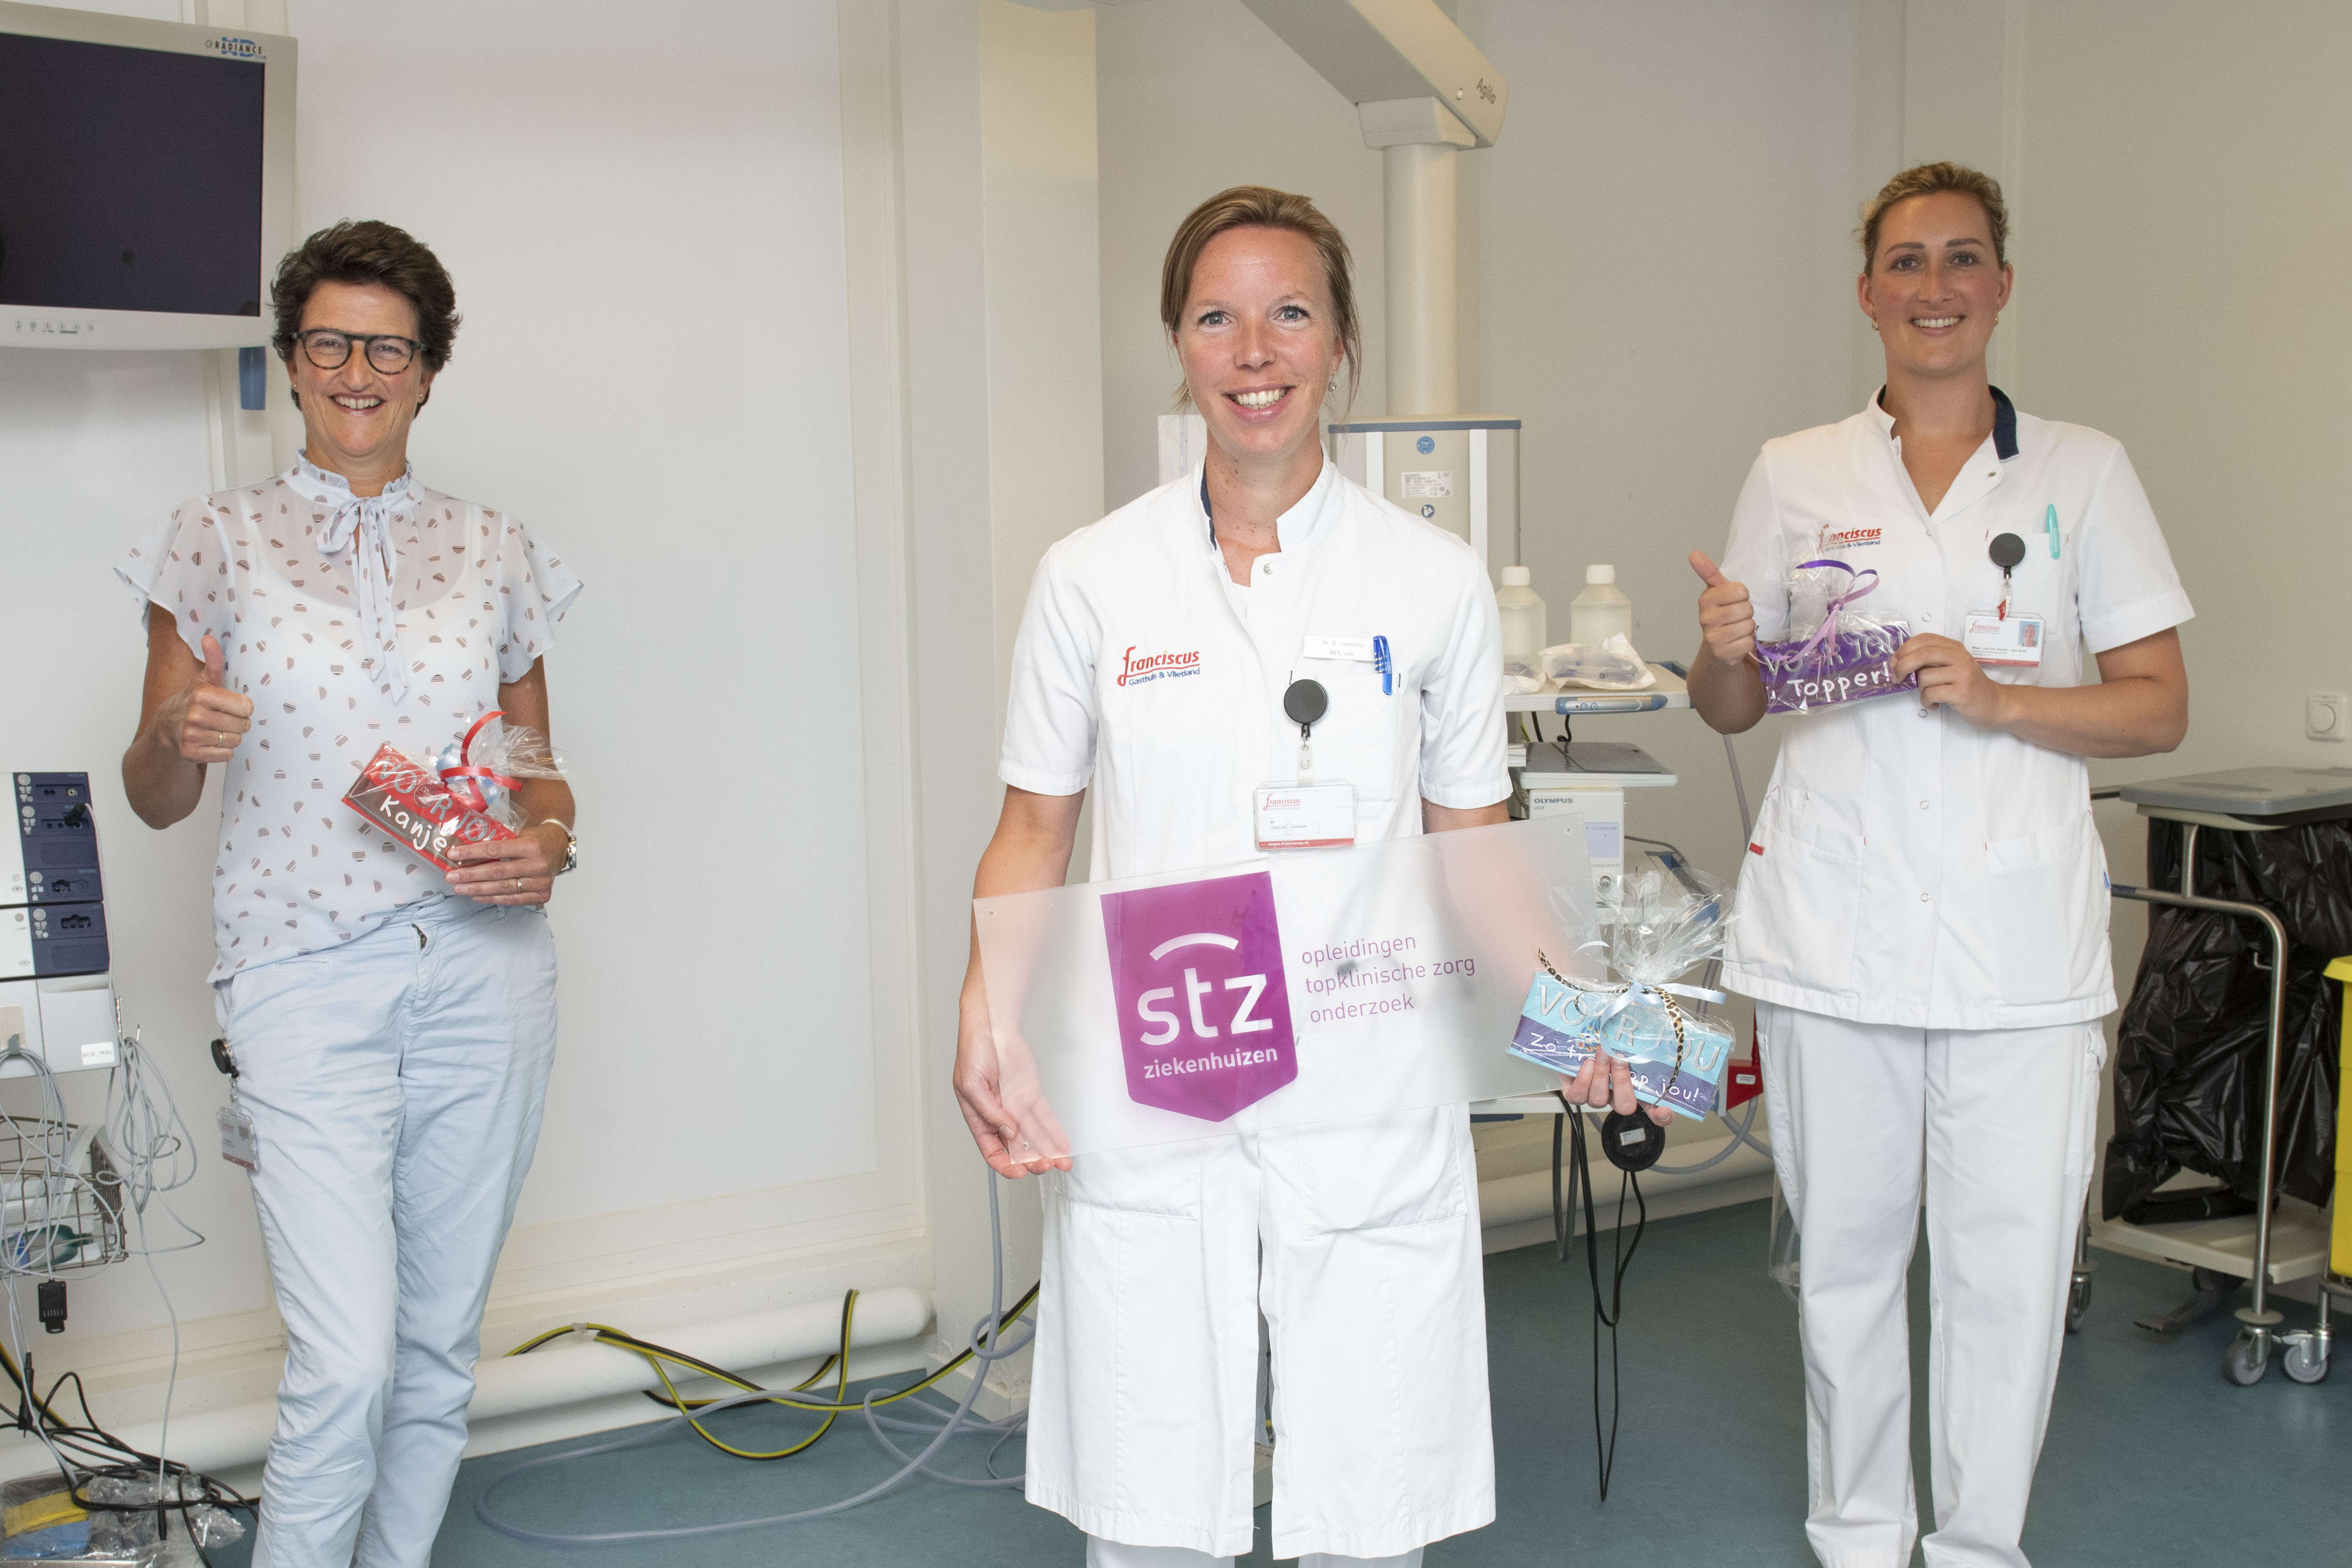 Viering STZ erkenning vlnr zorgmanager van Breugem Maag Darm Leverarts Leemreis en vepleegkundige van der Zande